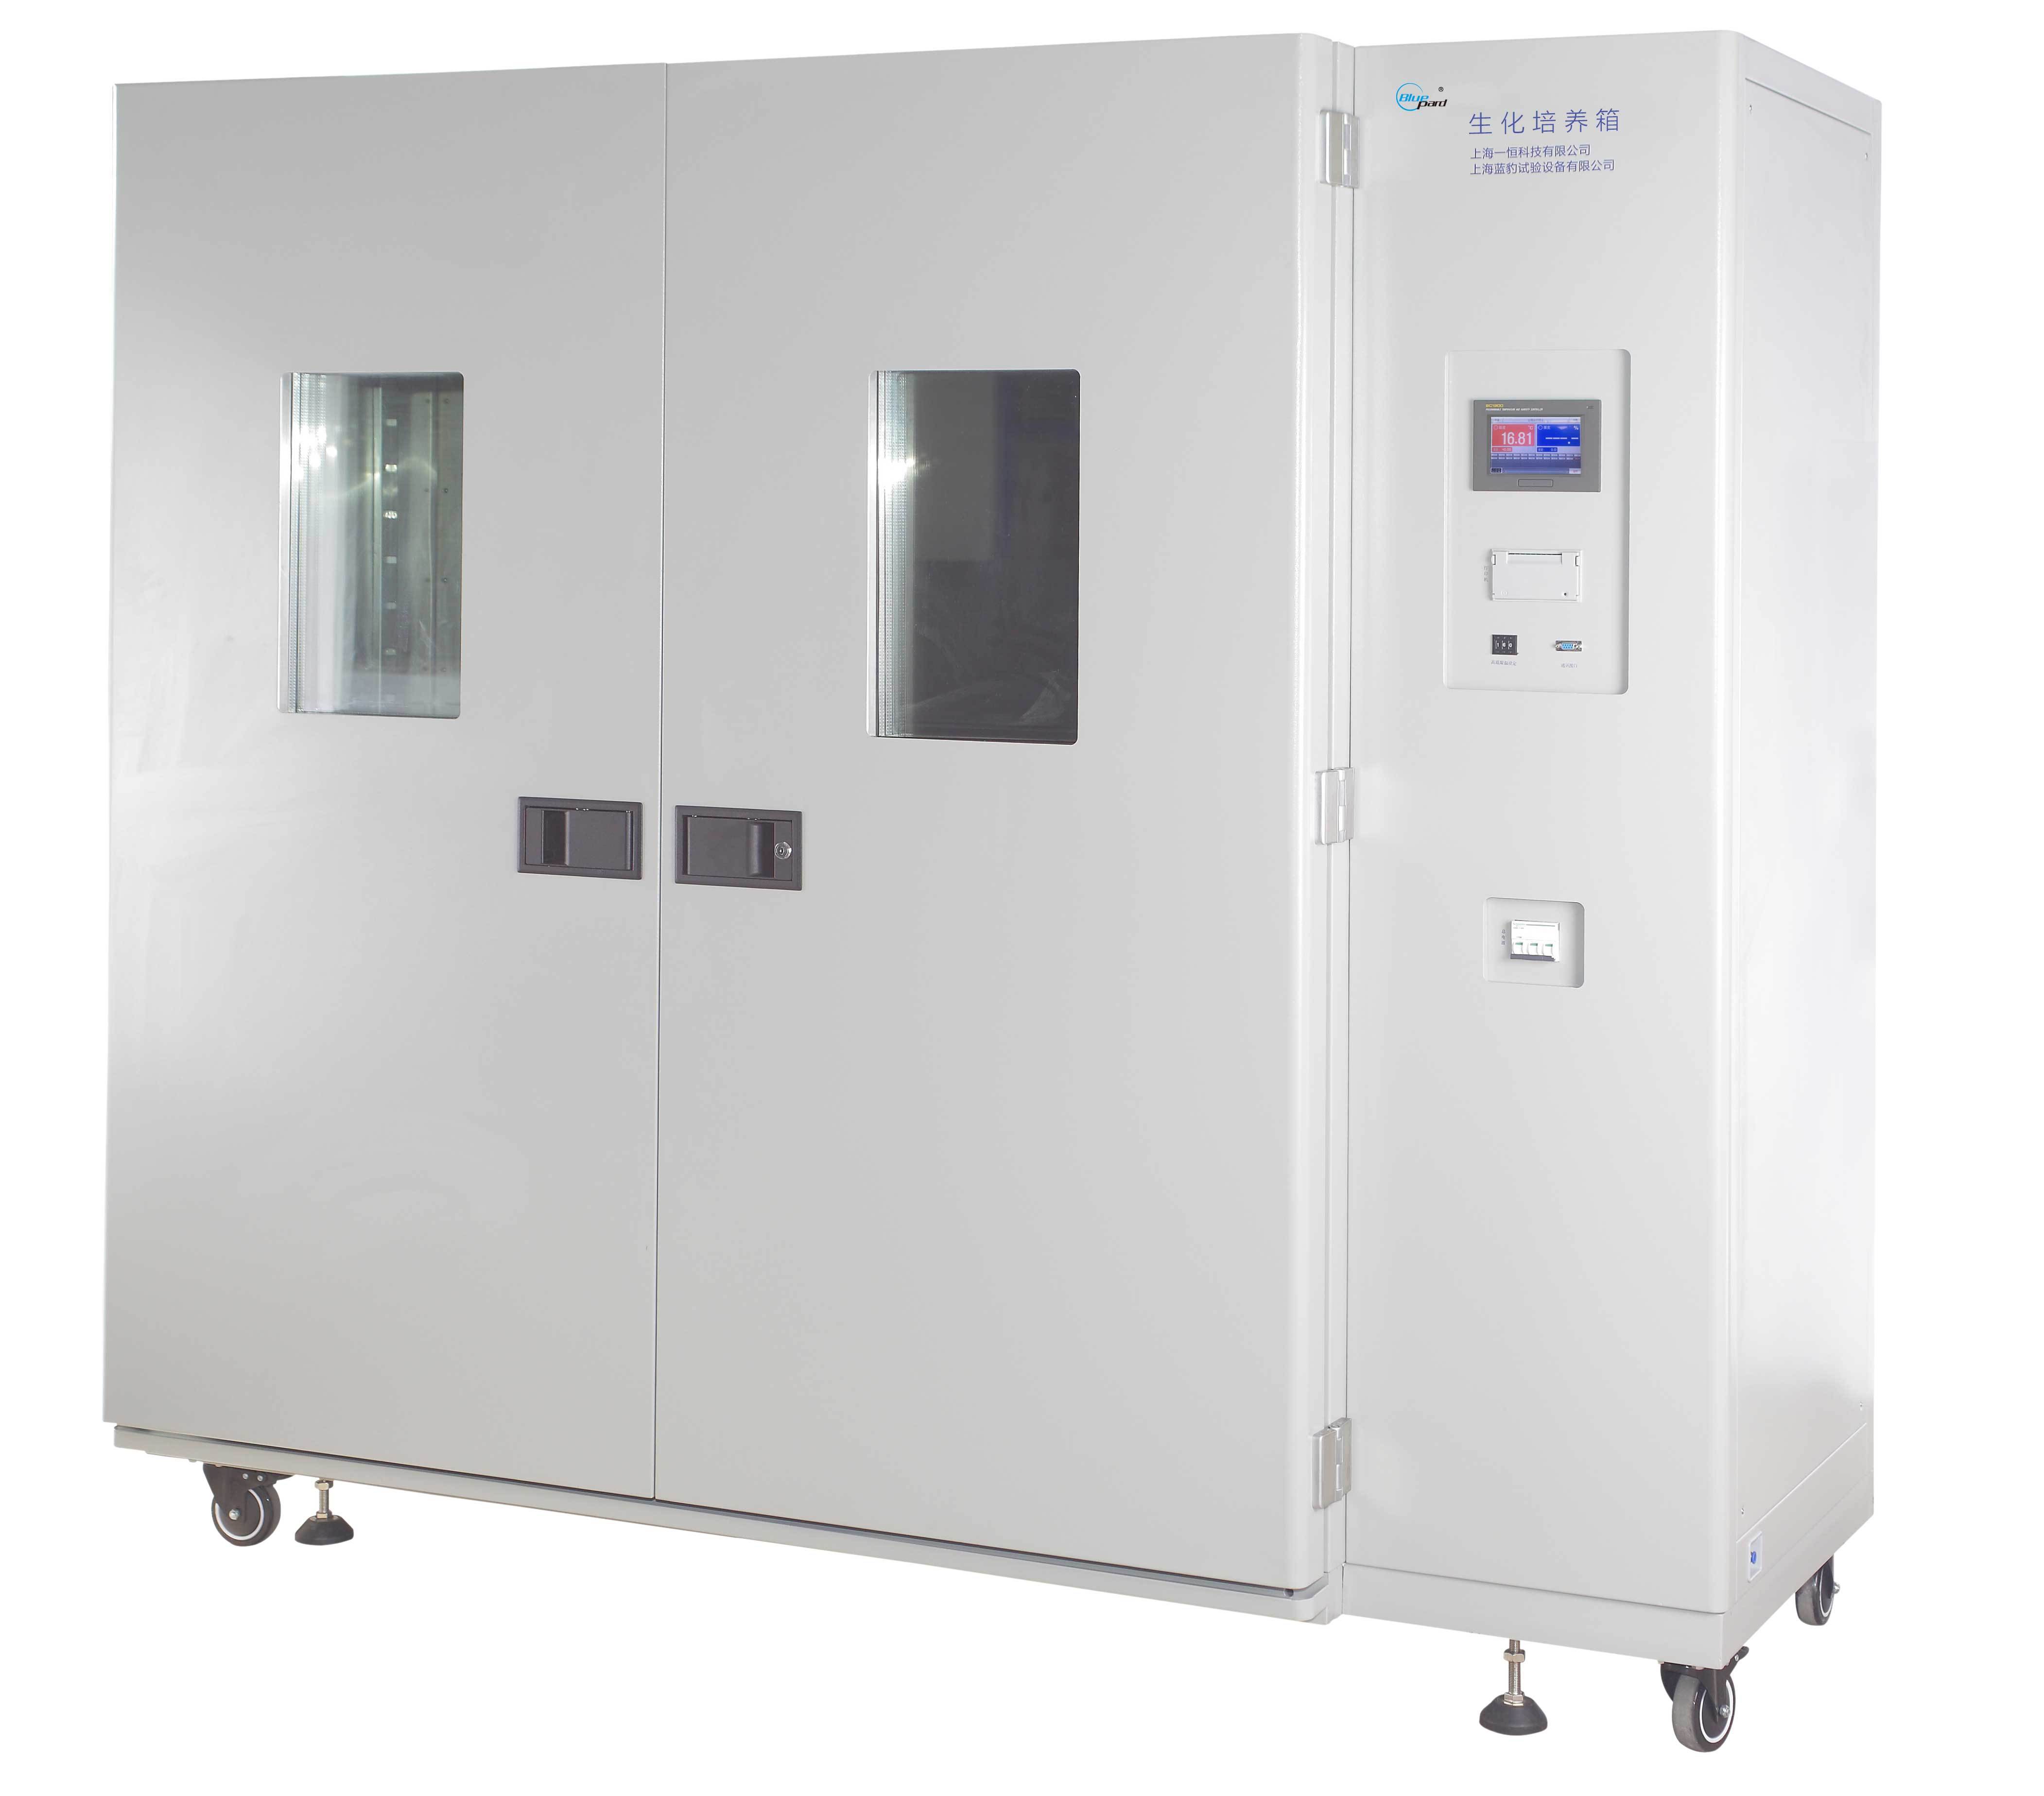 上海一恒大型生化培养箱——多段程序液晶控制器